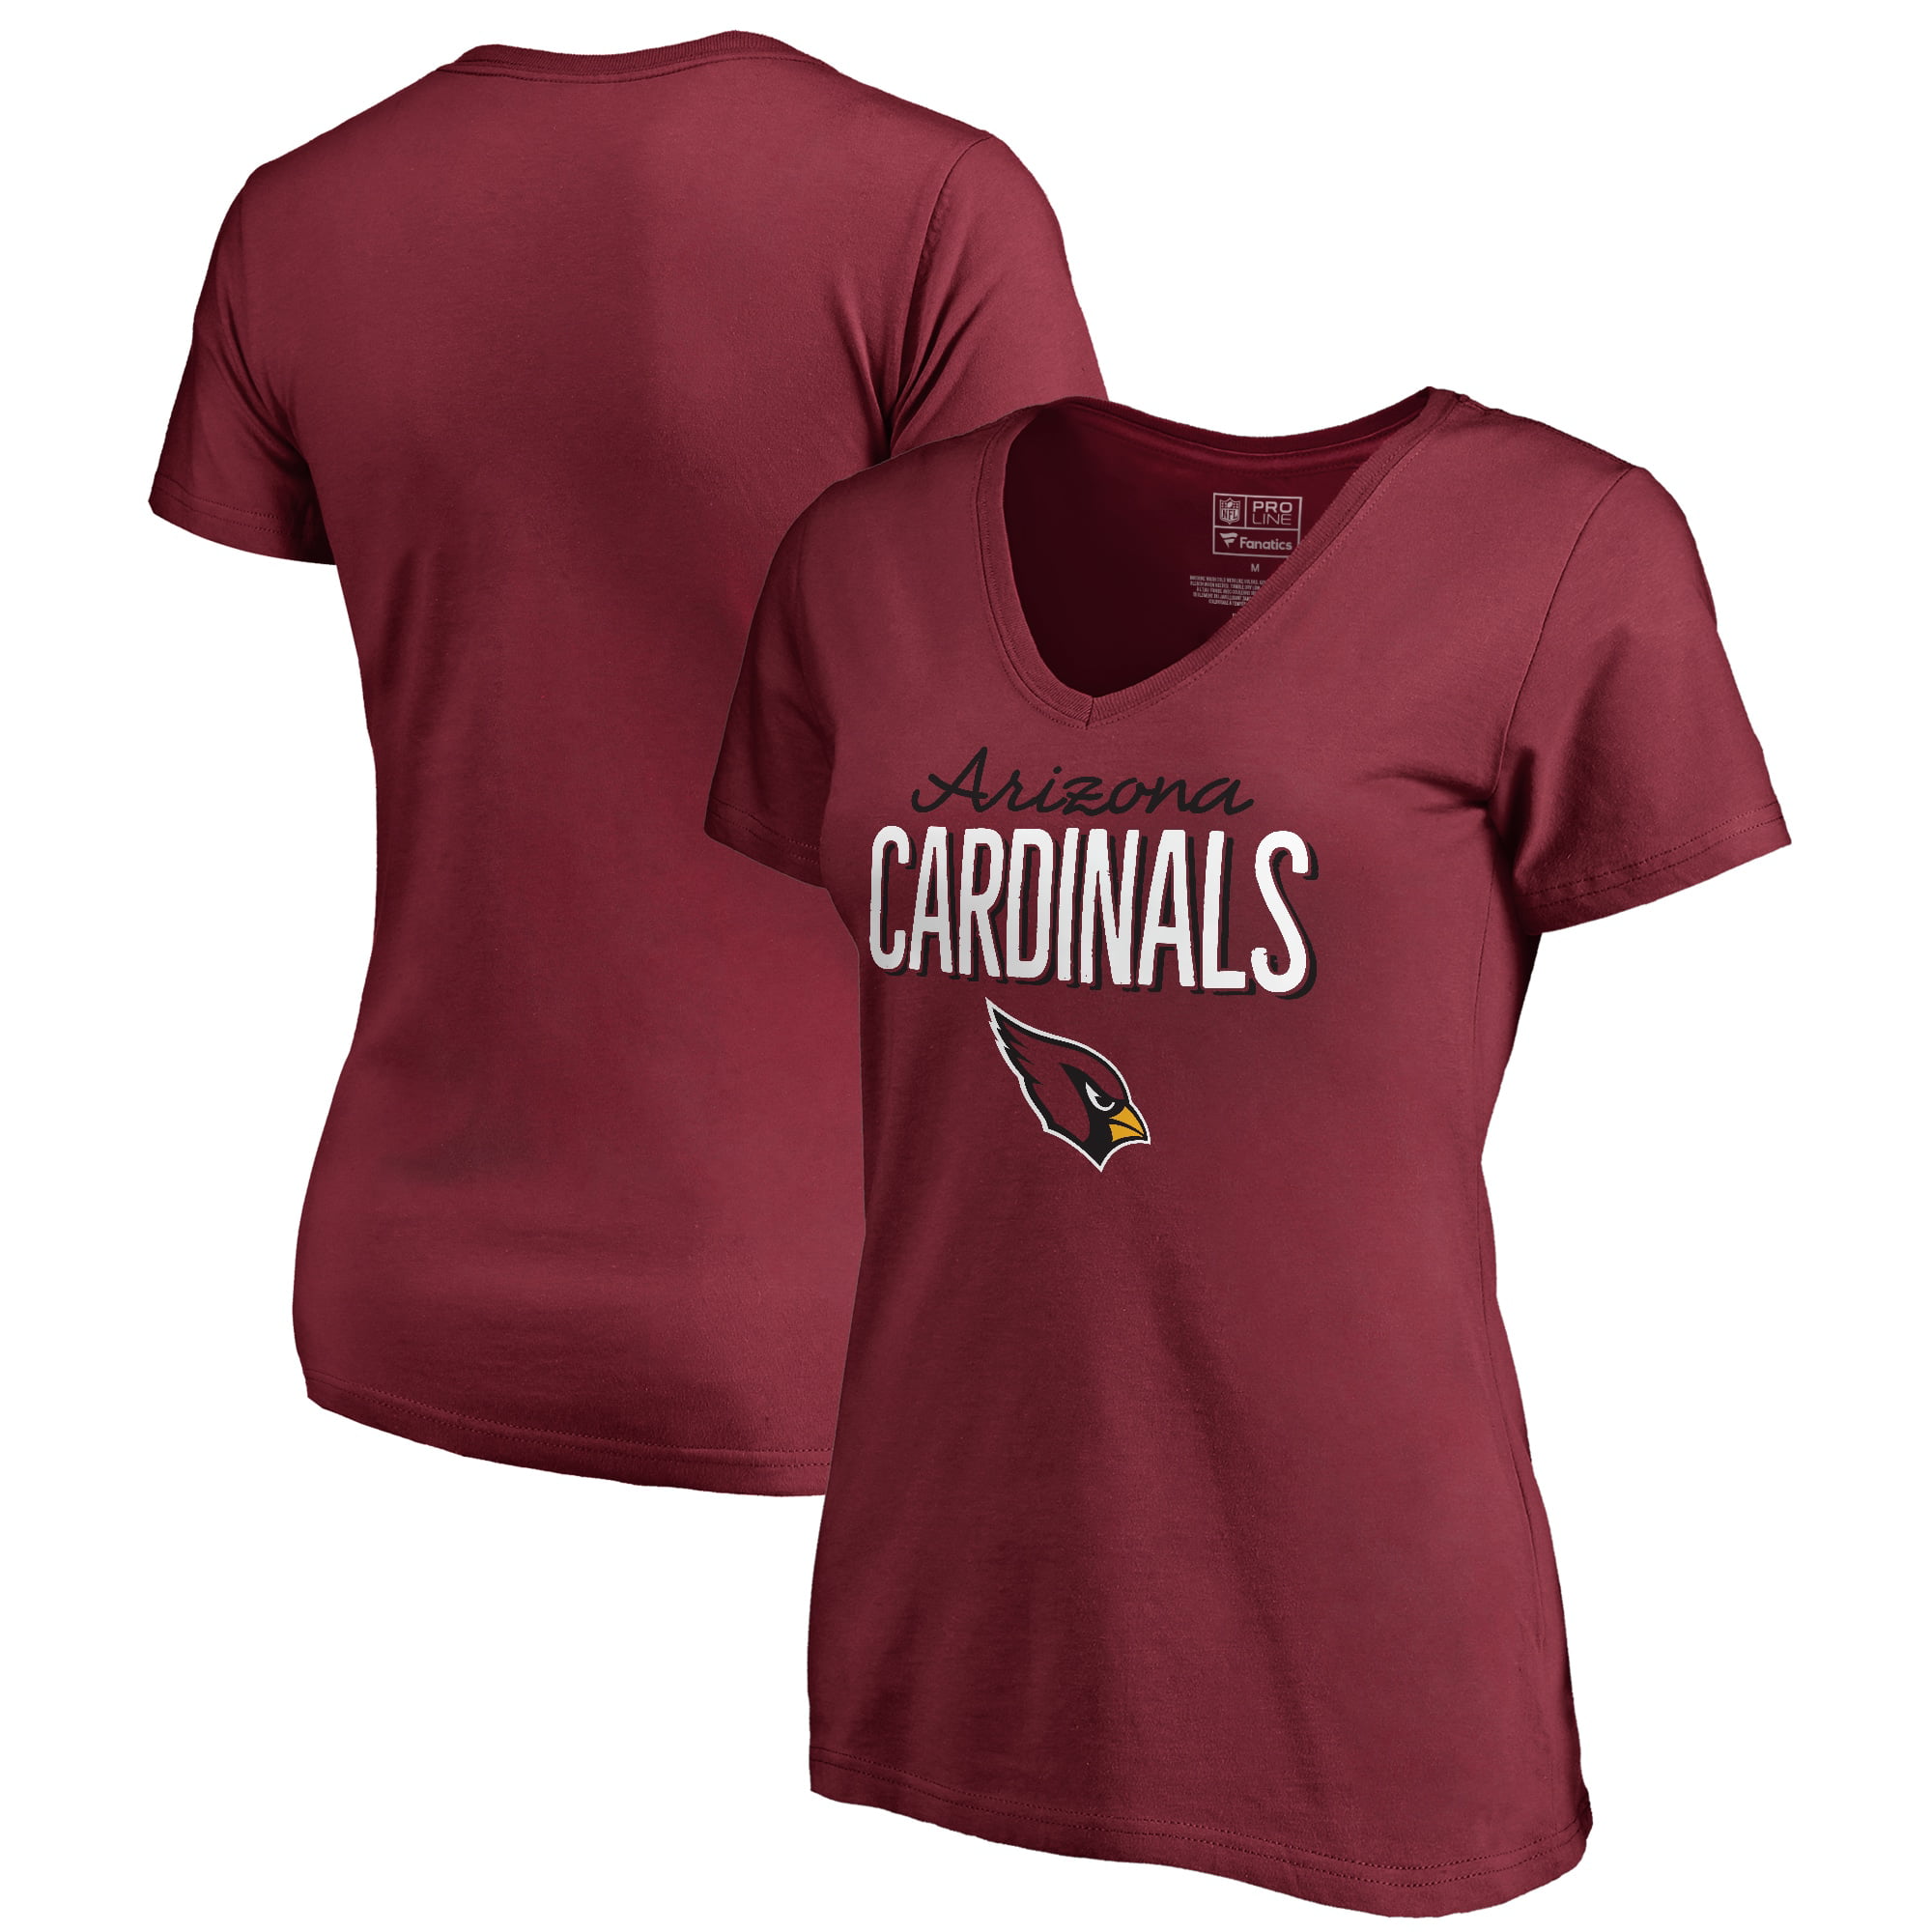 cardinals plus size shirts